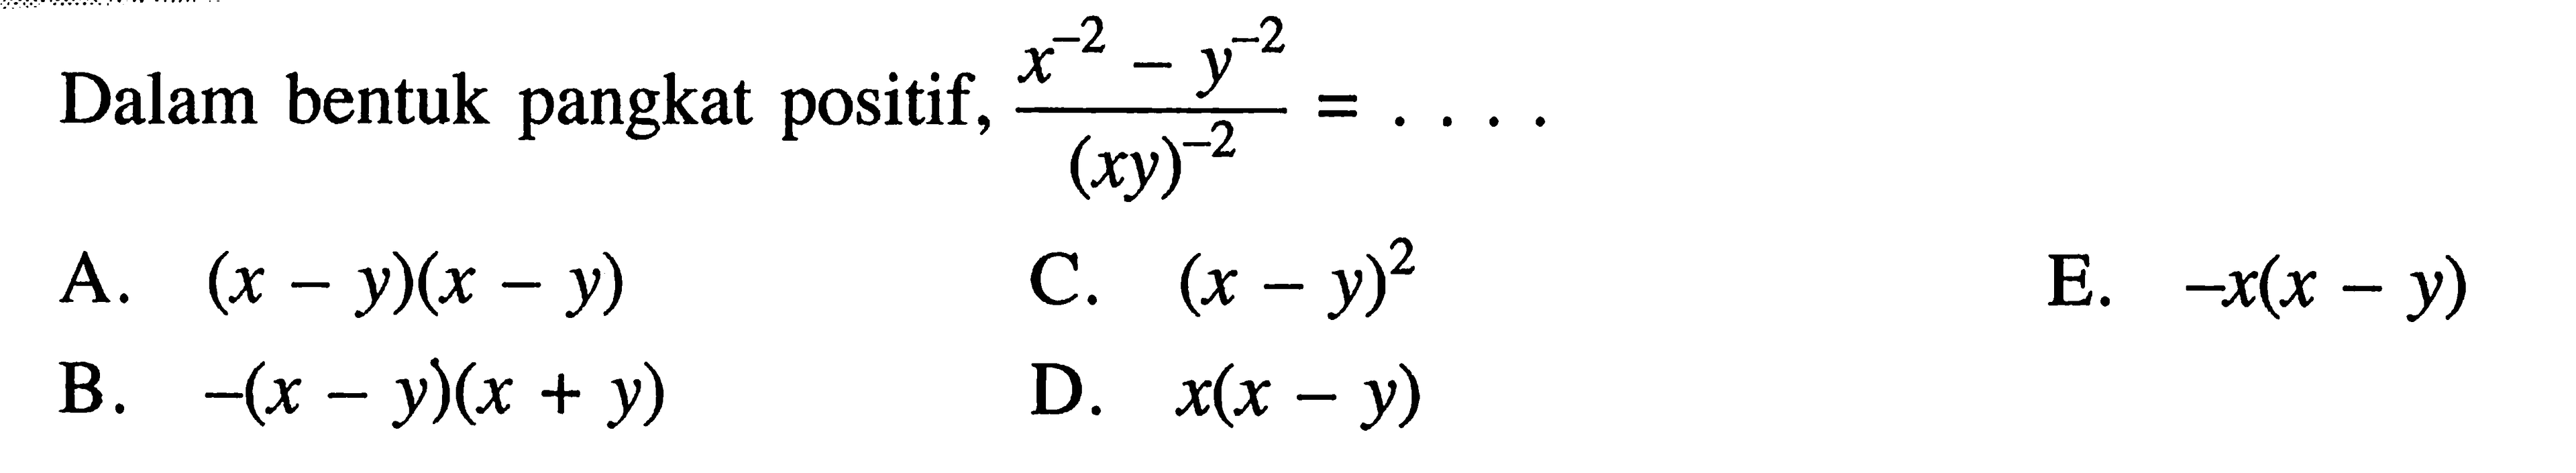 Dalam bentuk pangkat positif, (x^(-2) y^(-2))/((xy)^(-2))= ...